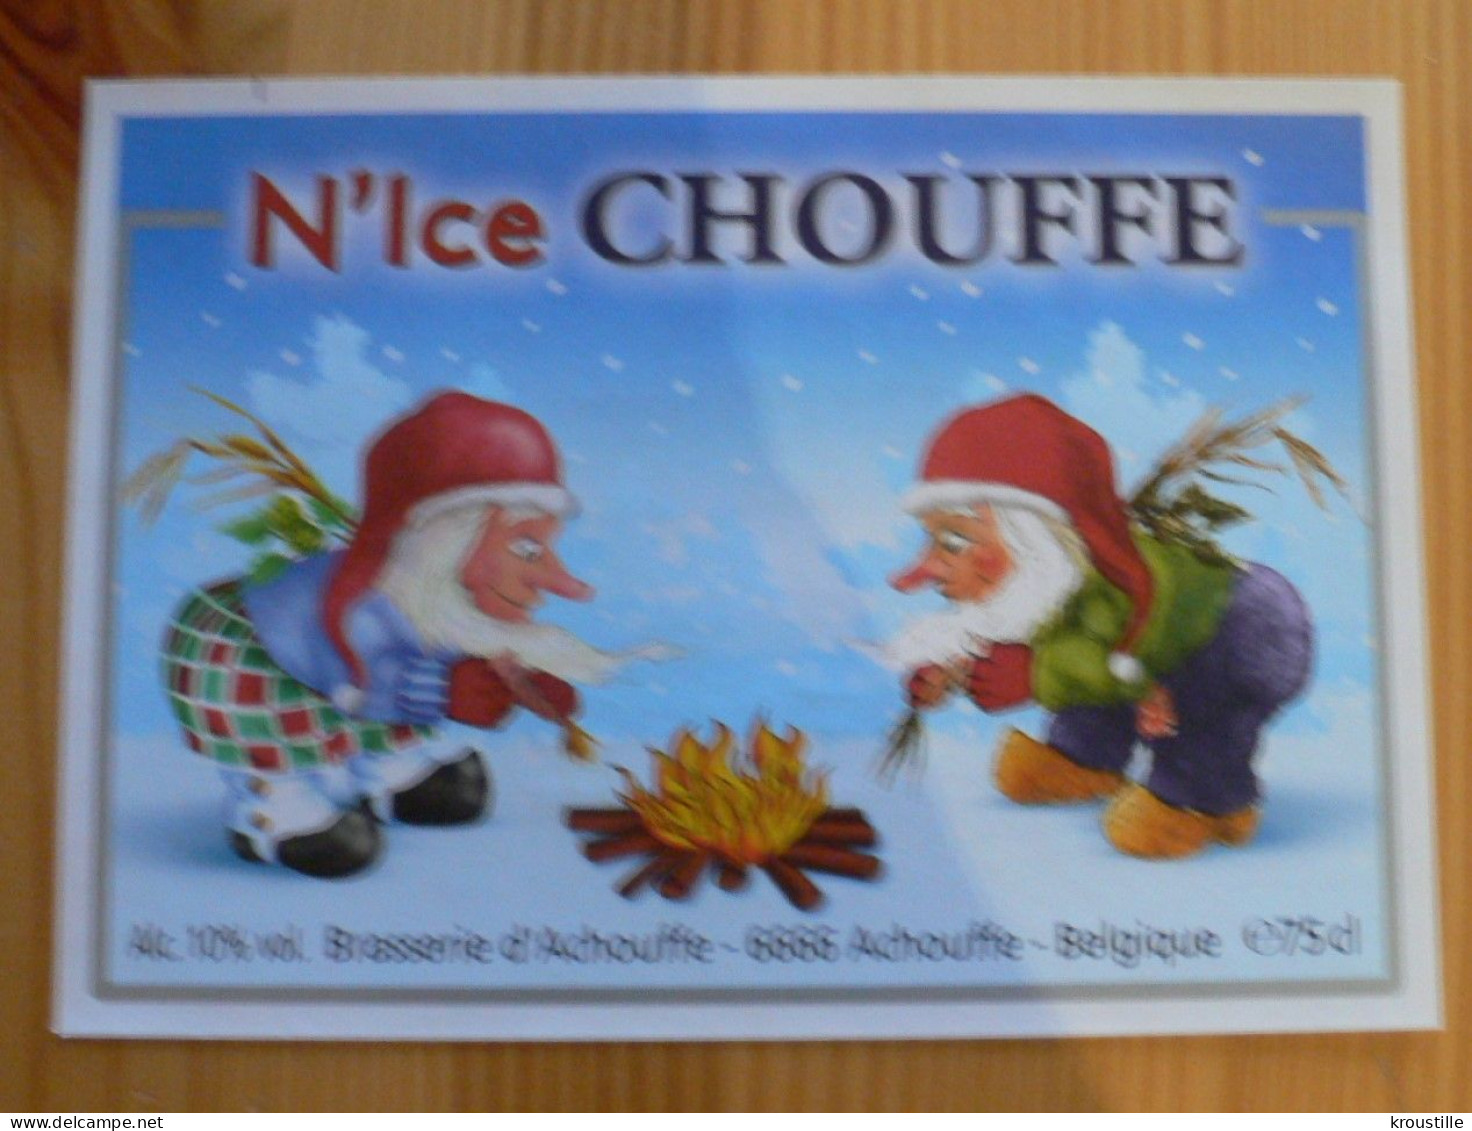 BRASSERIE D'ACHOUFFE (BELGIQUE) : ETIQUETTE N'ICE CHOUFFE - NEUVE - Birra